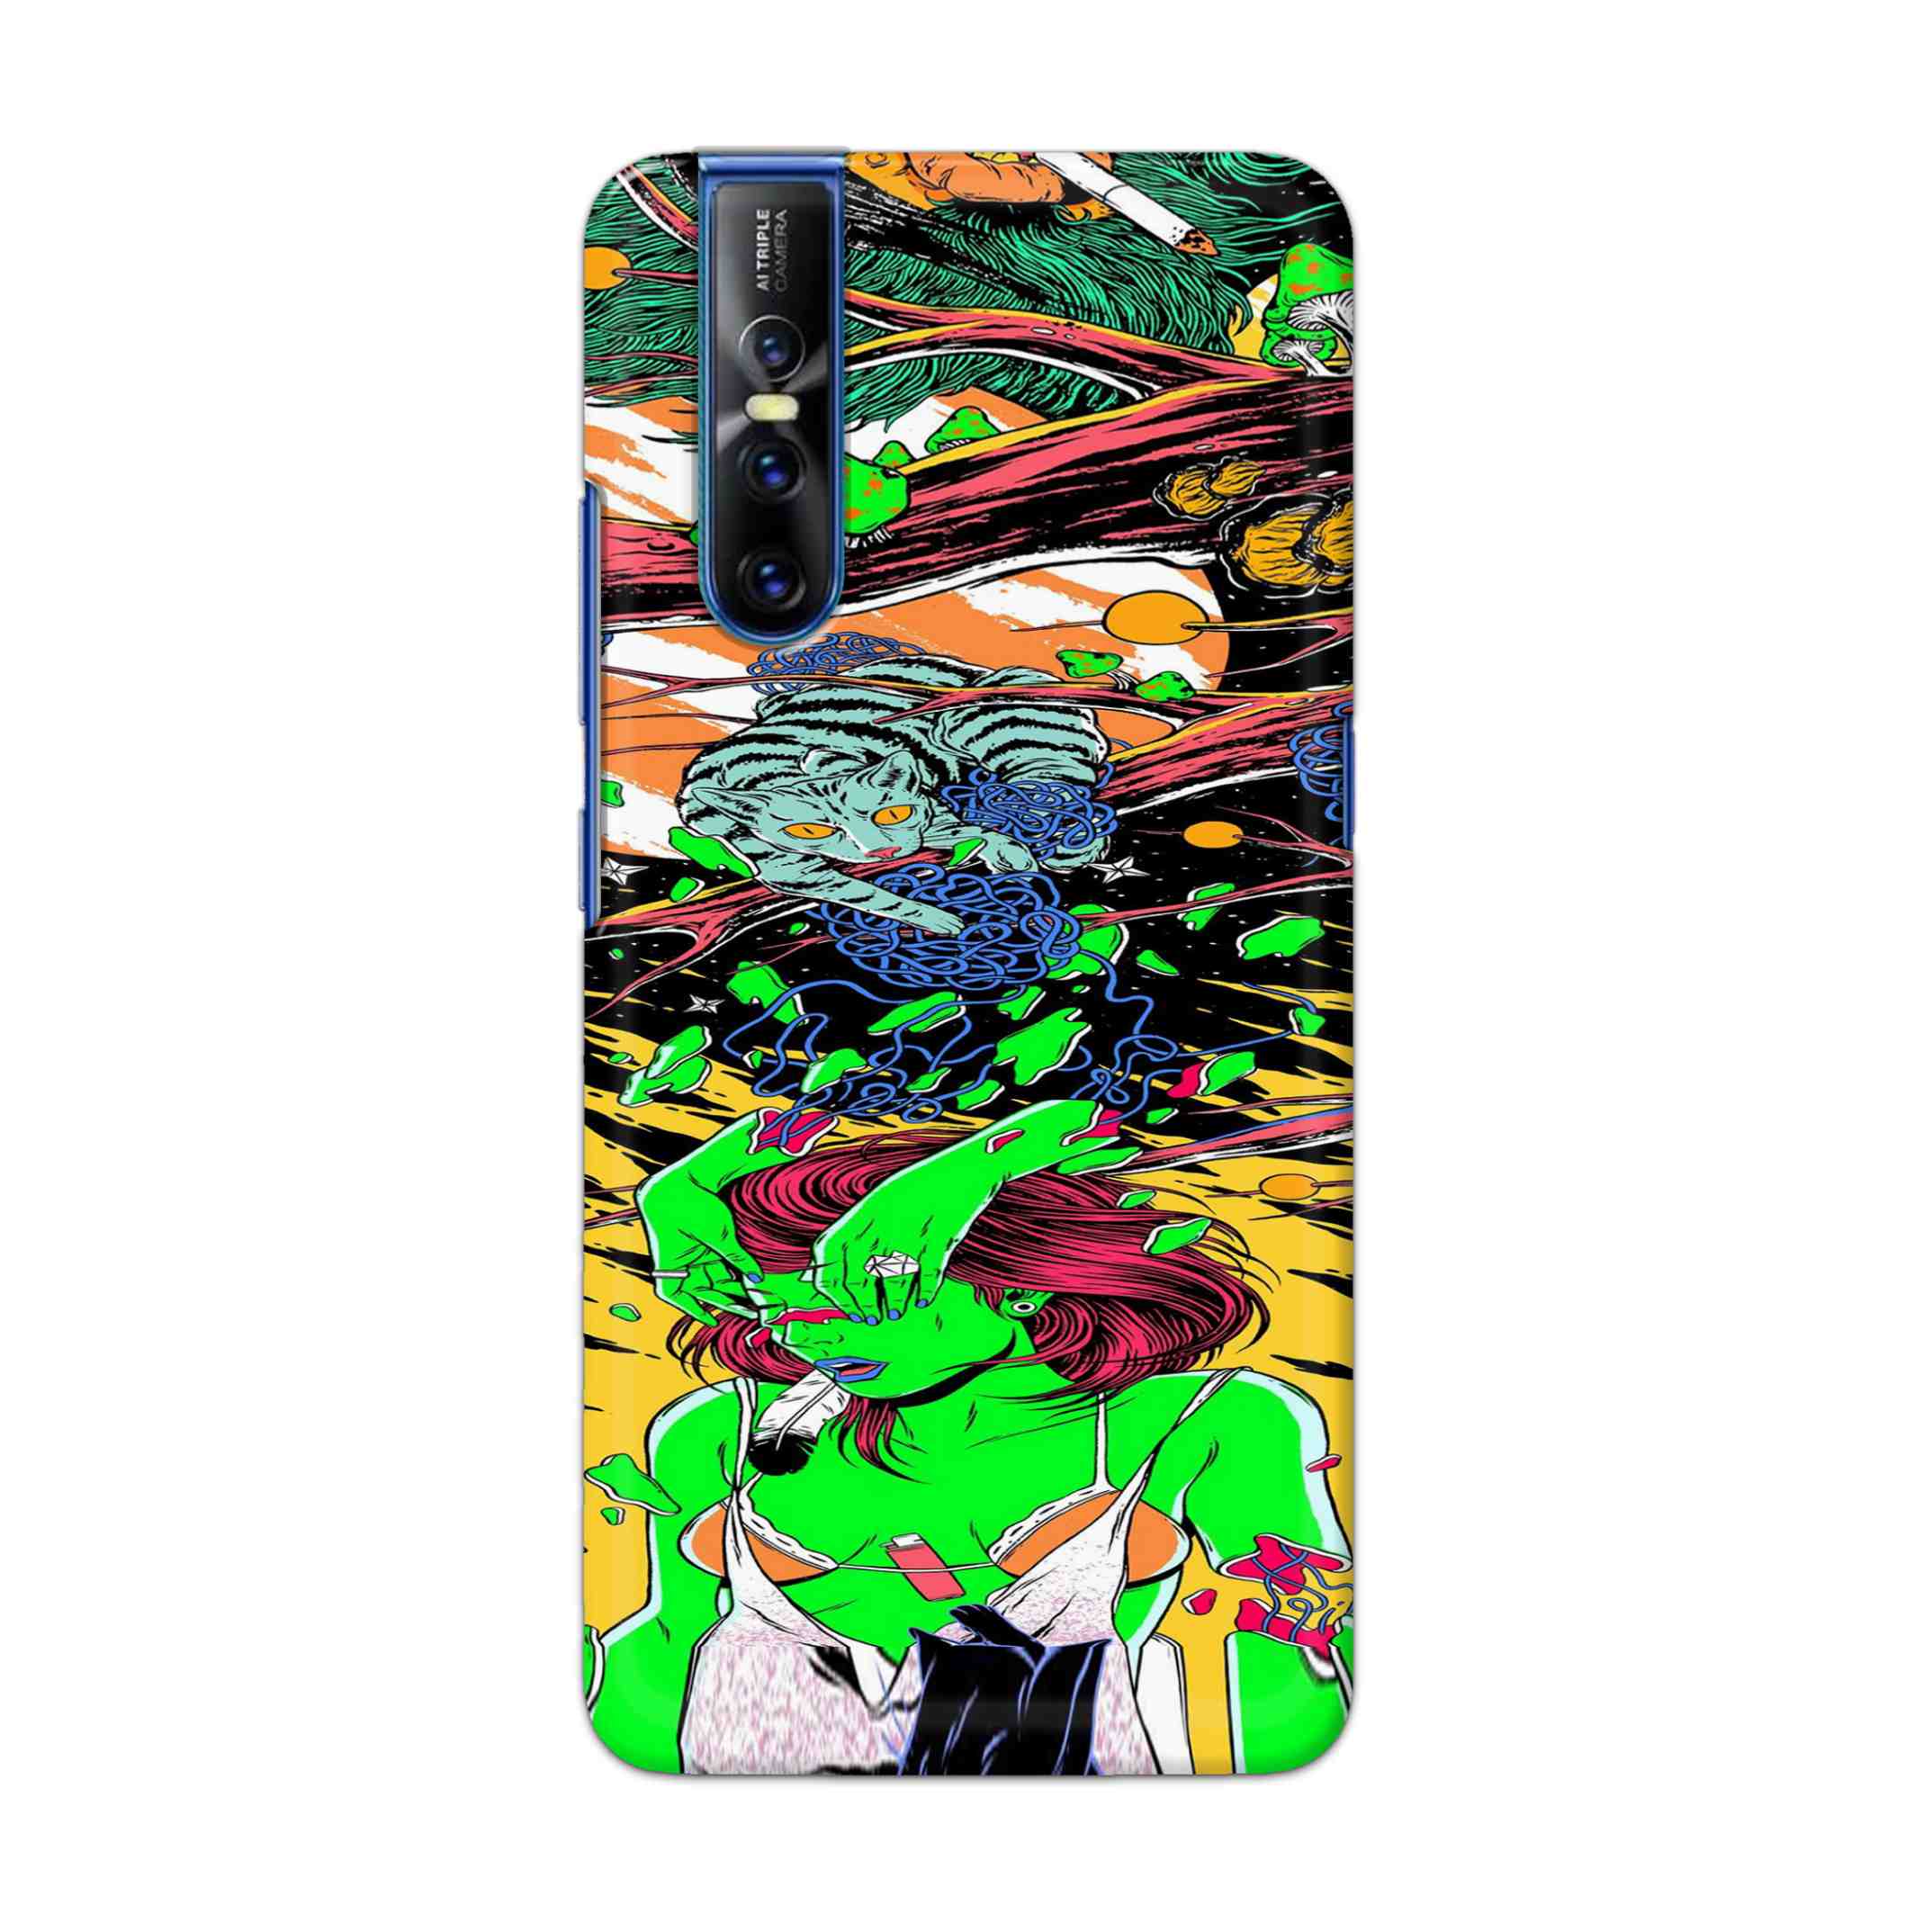 Buy Green Girl Art Hard Back Mobile Phone Case Cover For Vivo V15 Pro Online